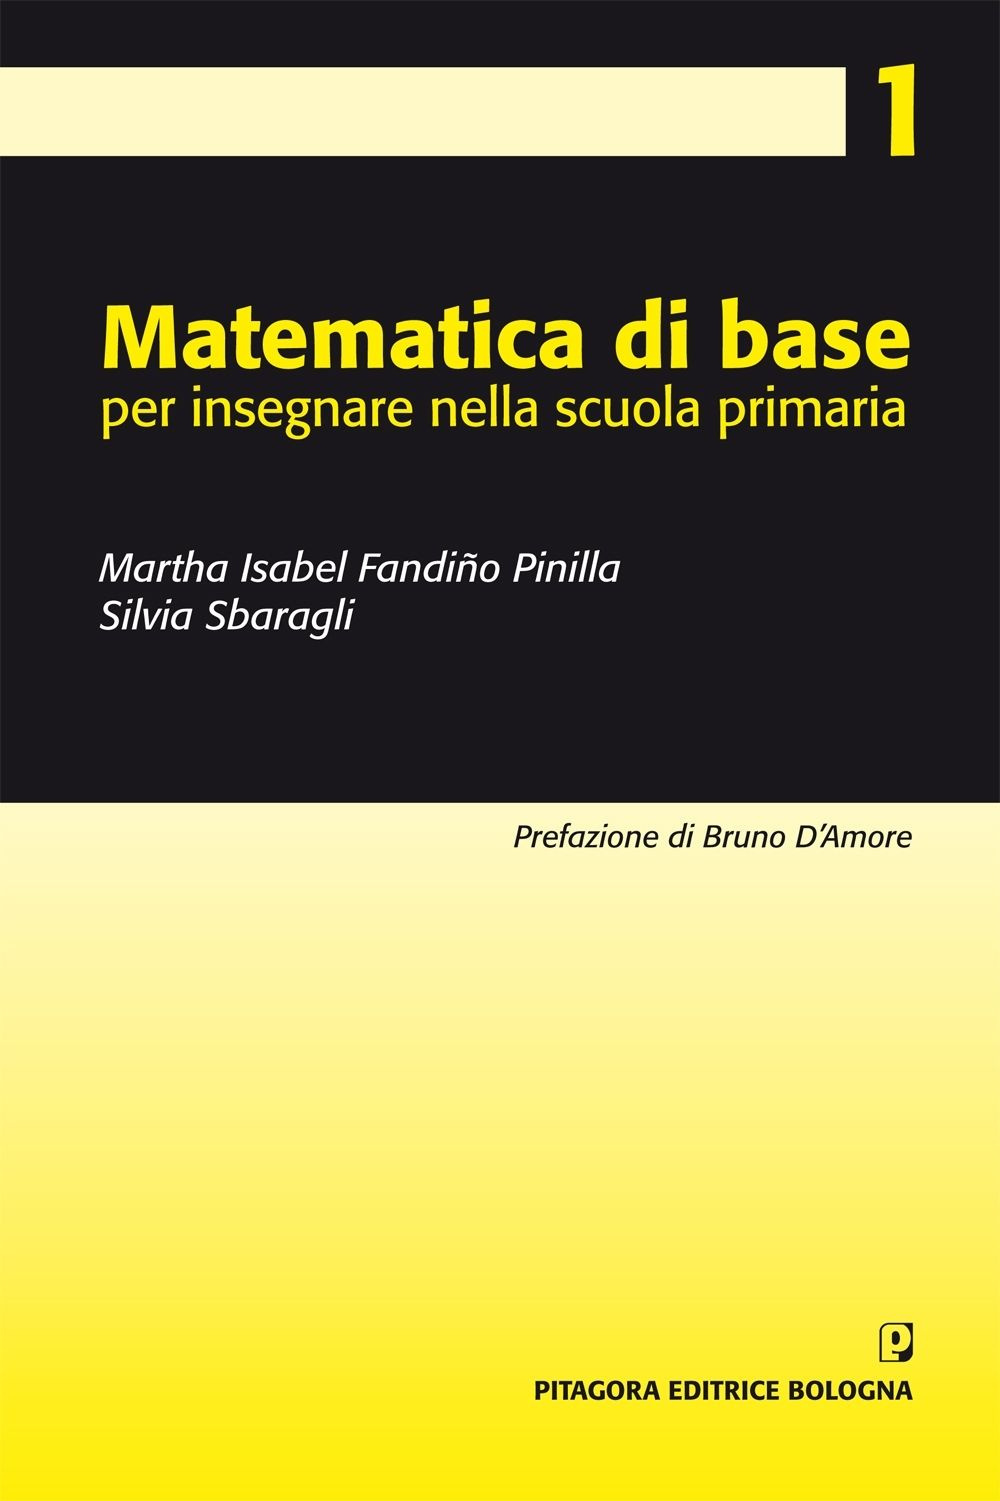 Image of Matematica di base per insegnare nella scuola primaria